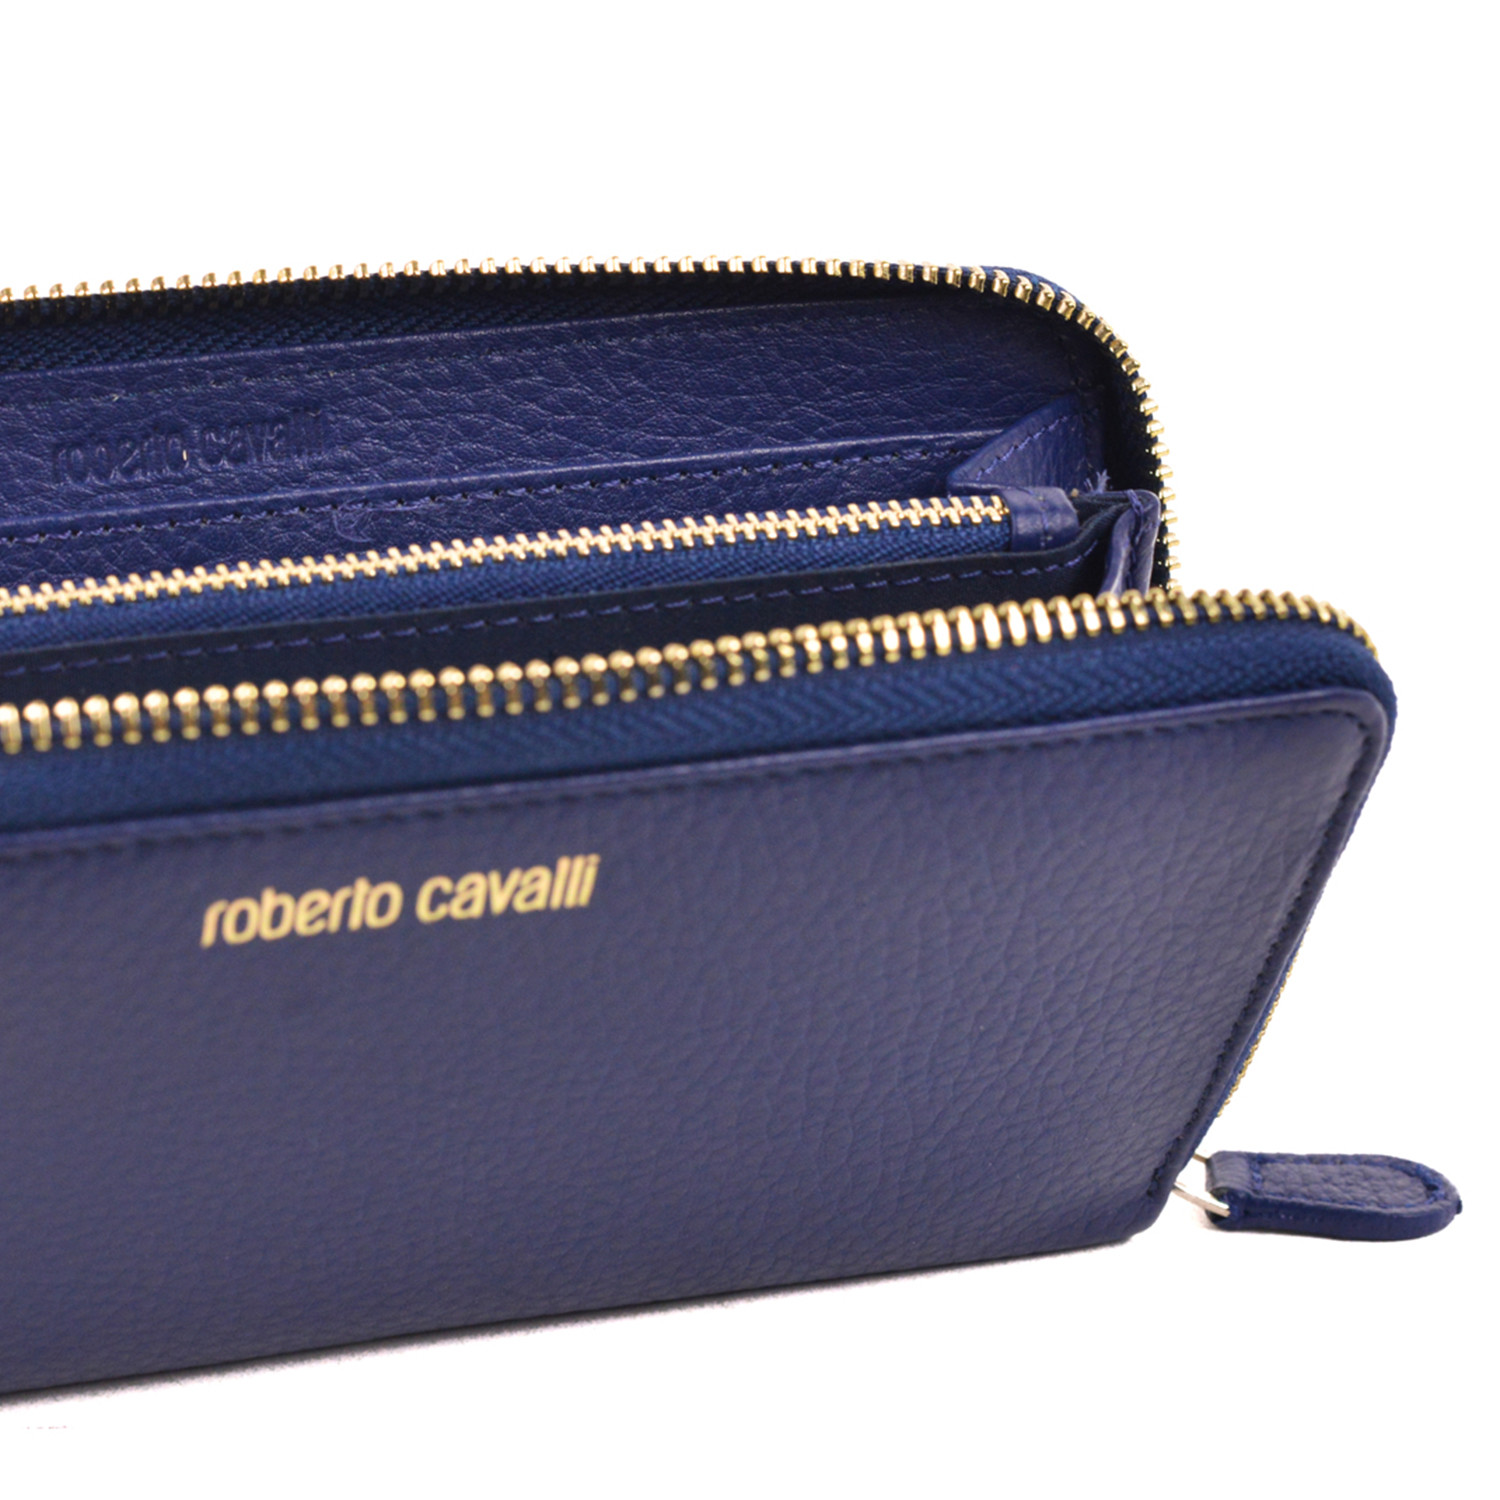 Roberto Cavalli // Zip-Around Wallet // Blue - The Designer Collection ...